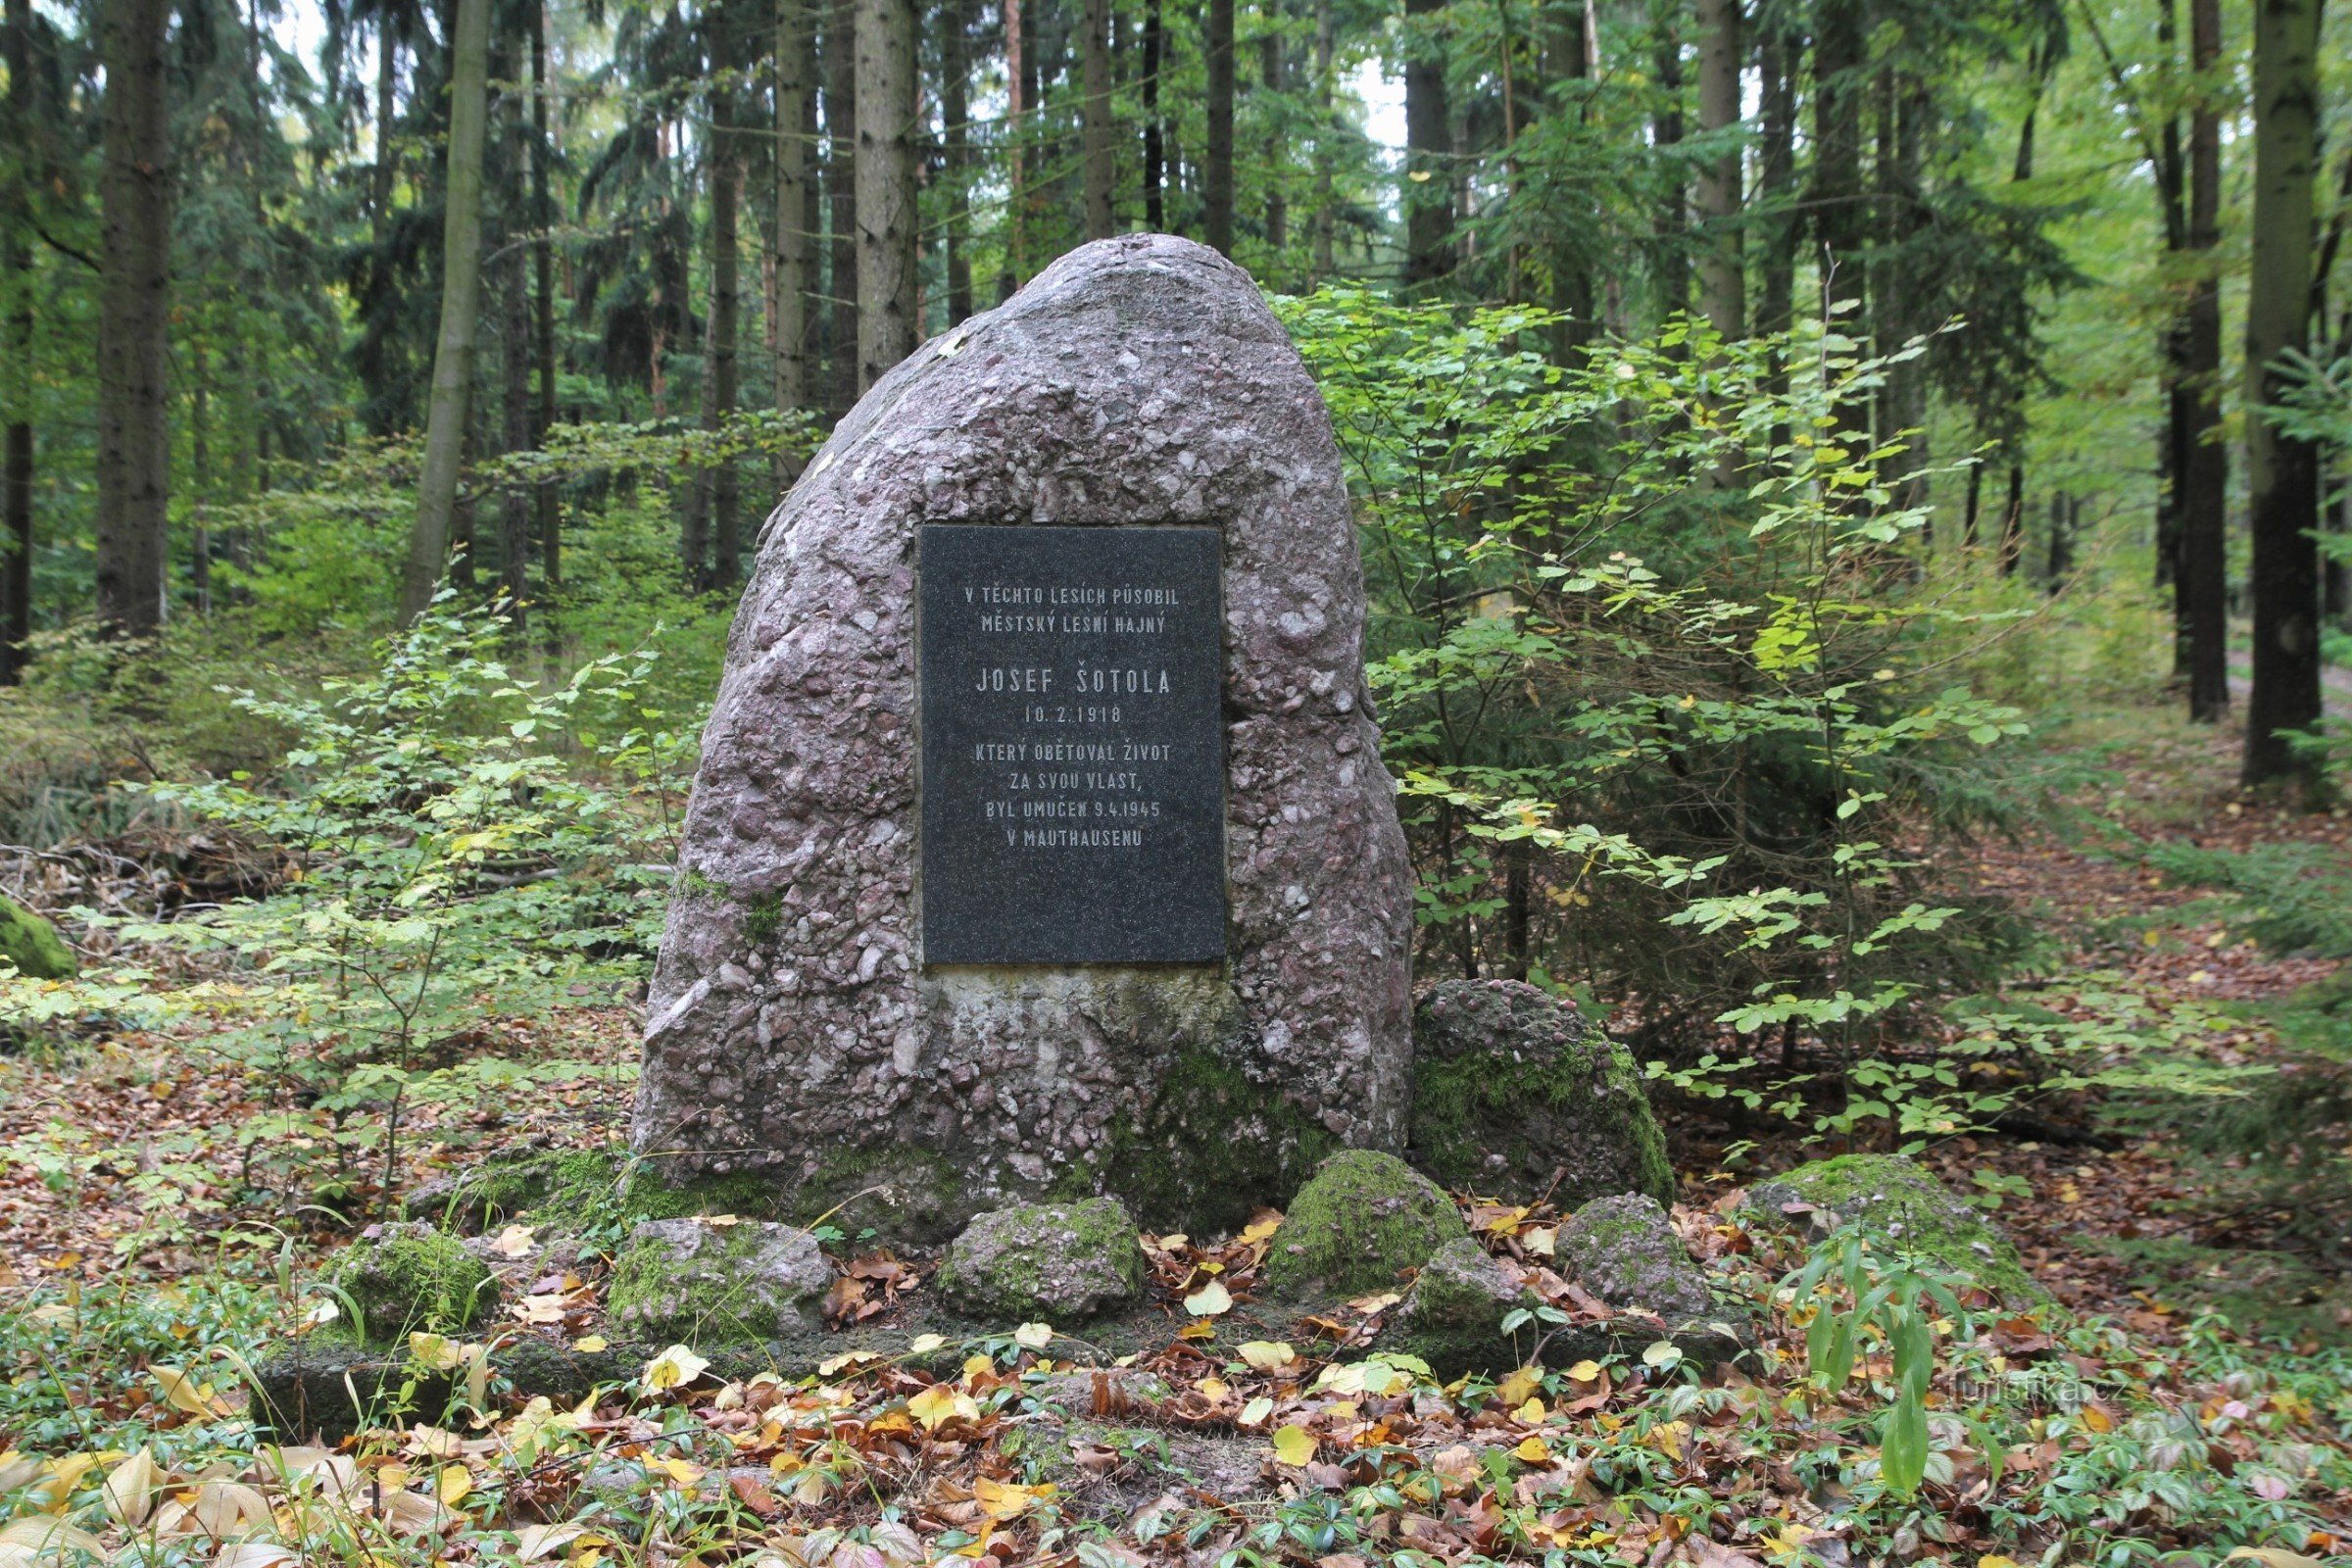 Đài tưởng niệm Josef Šotola